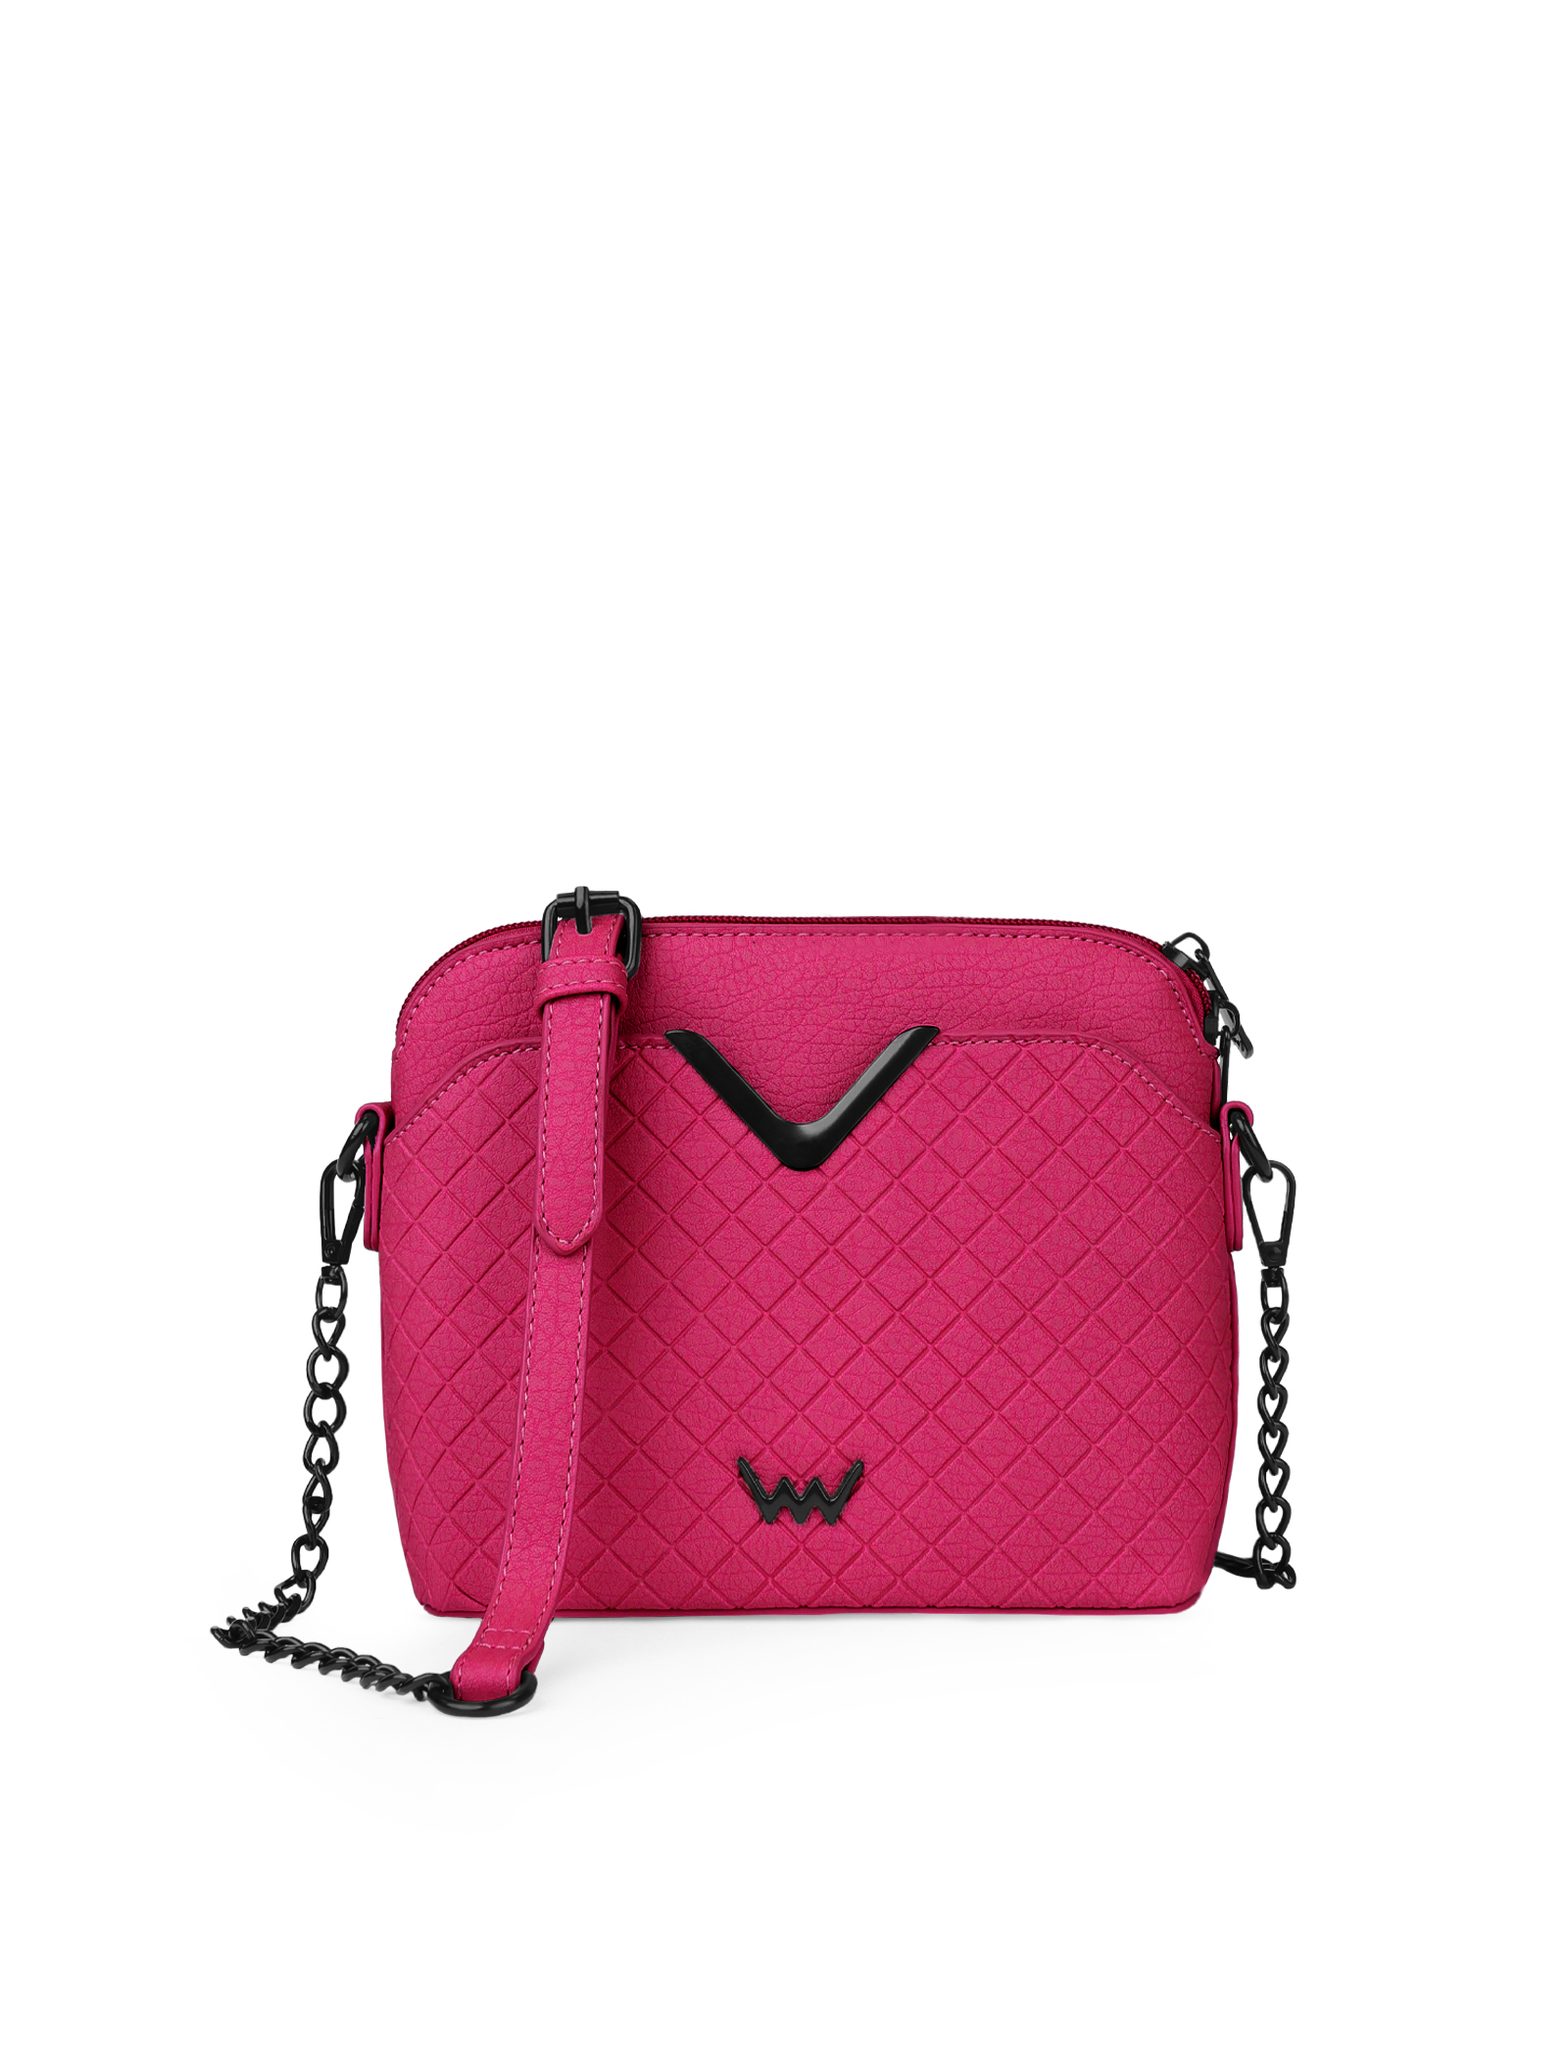 Handbag VUCH Fossy Mini Pink